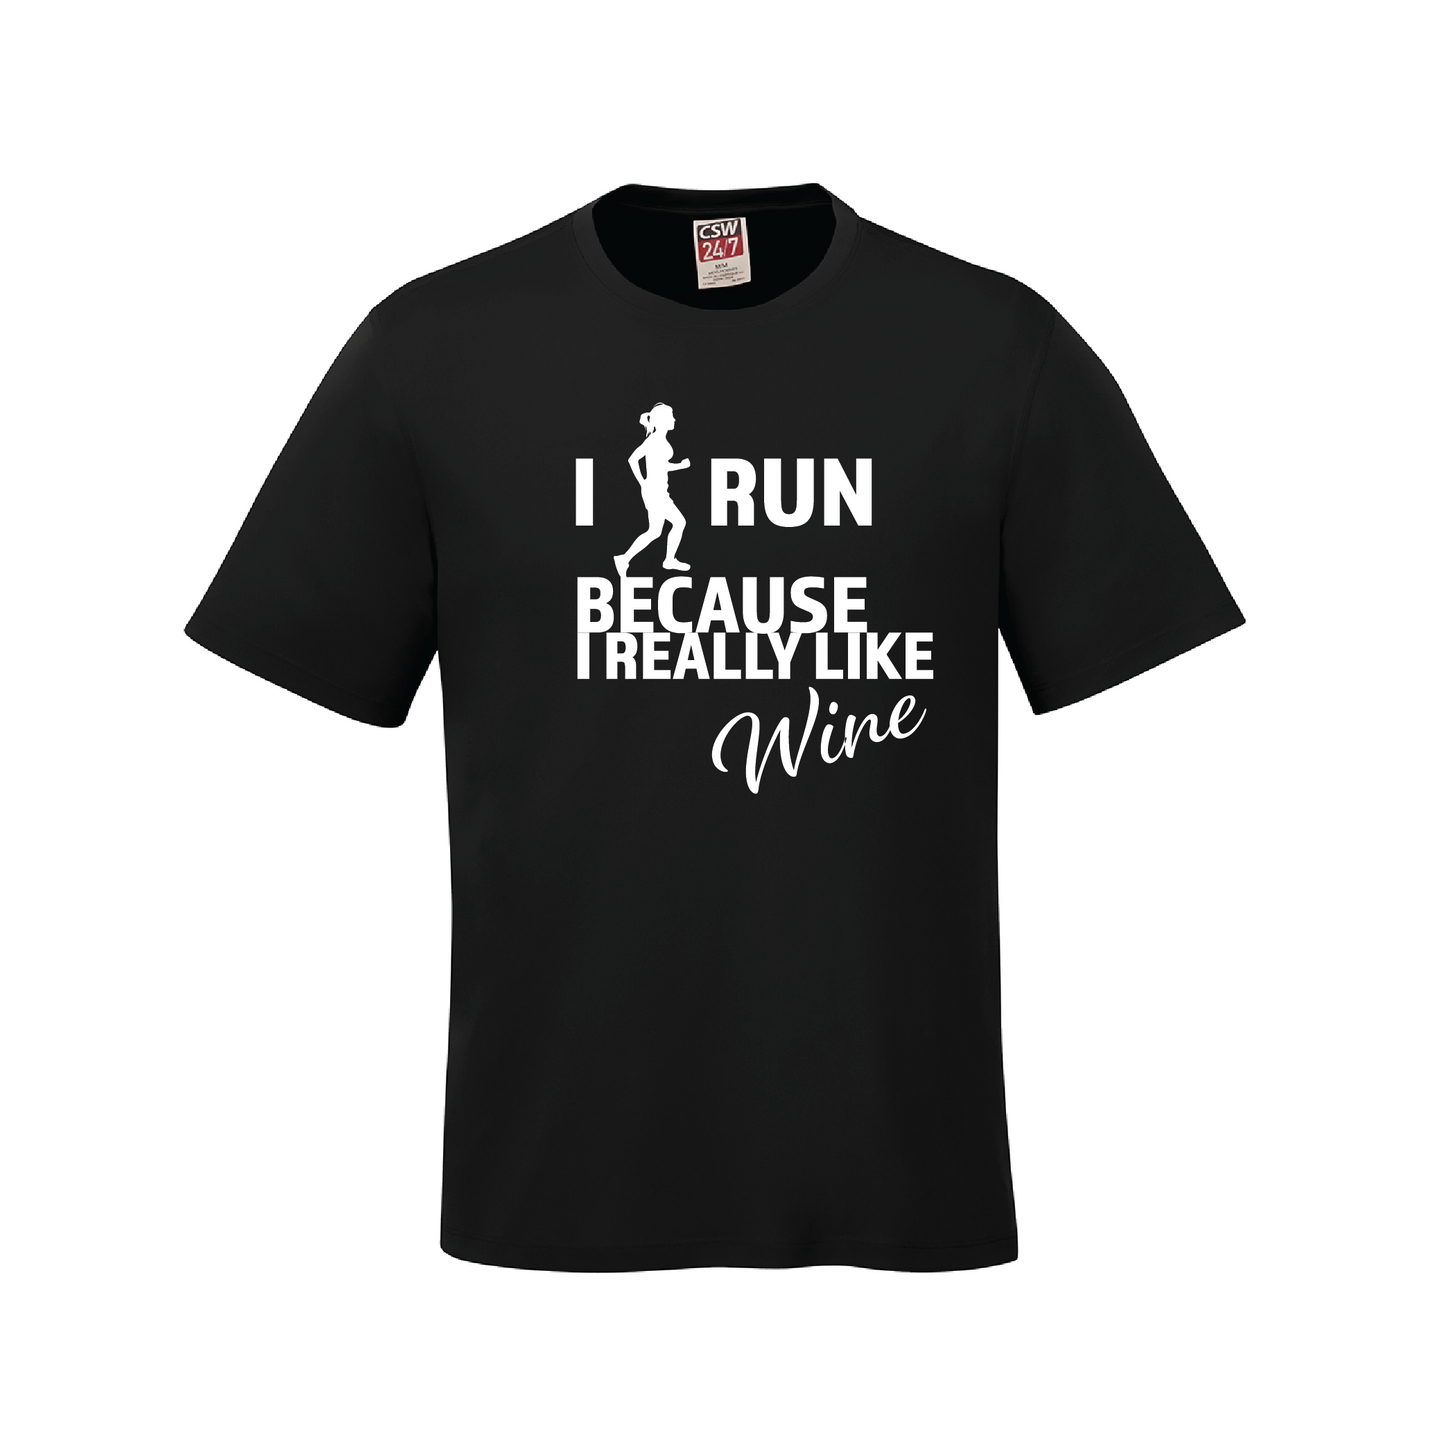 Run for wine T-Shirt